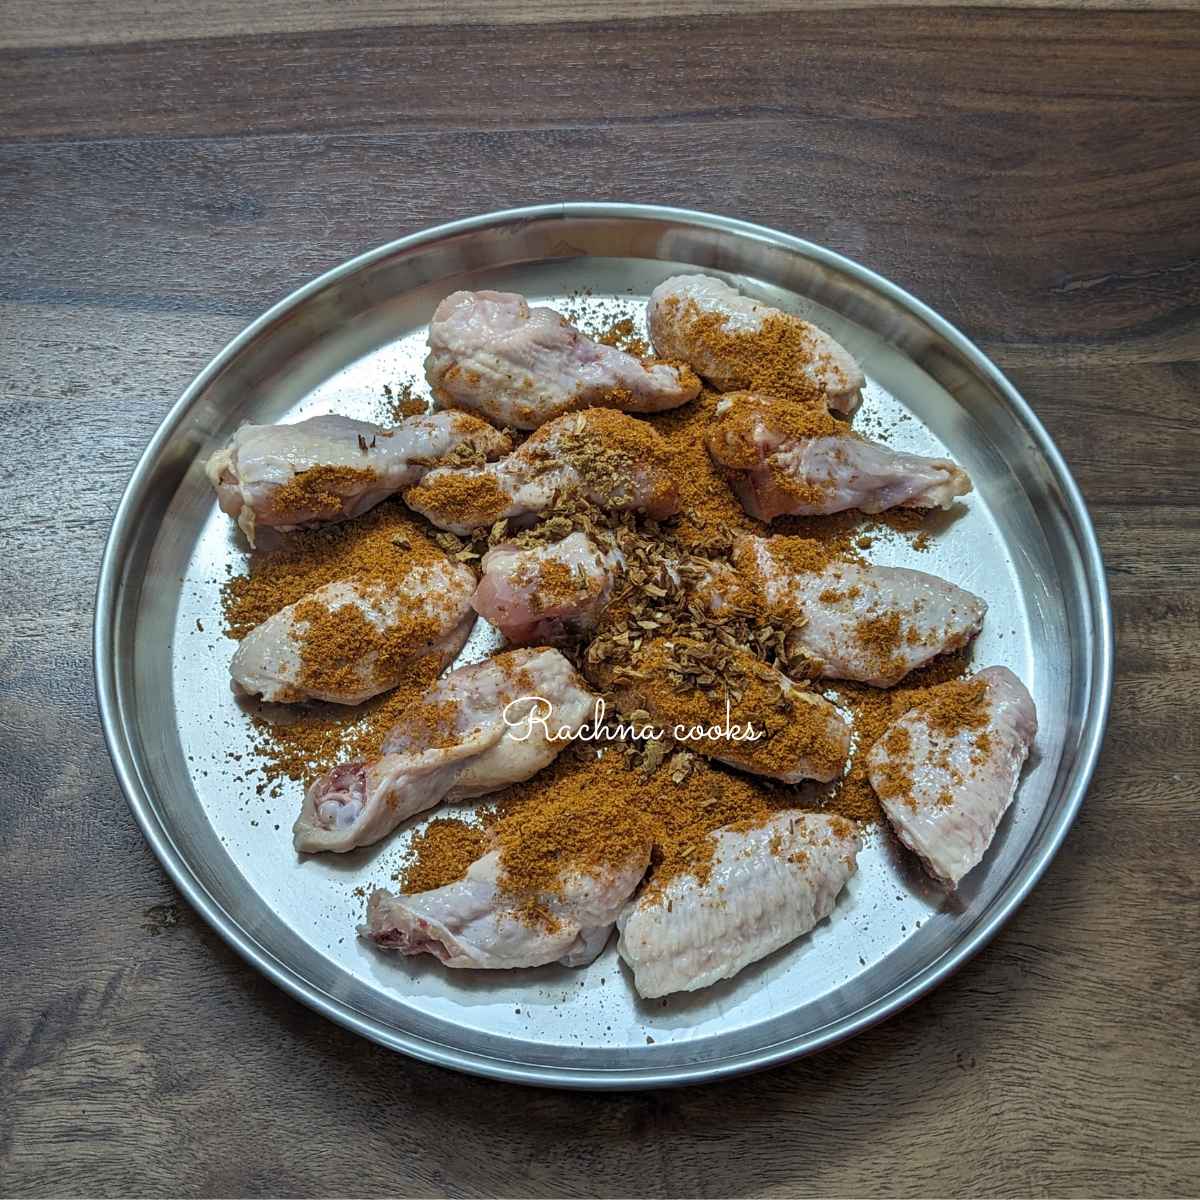 Chicken wings with seasonings.